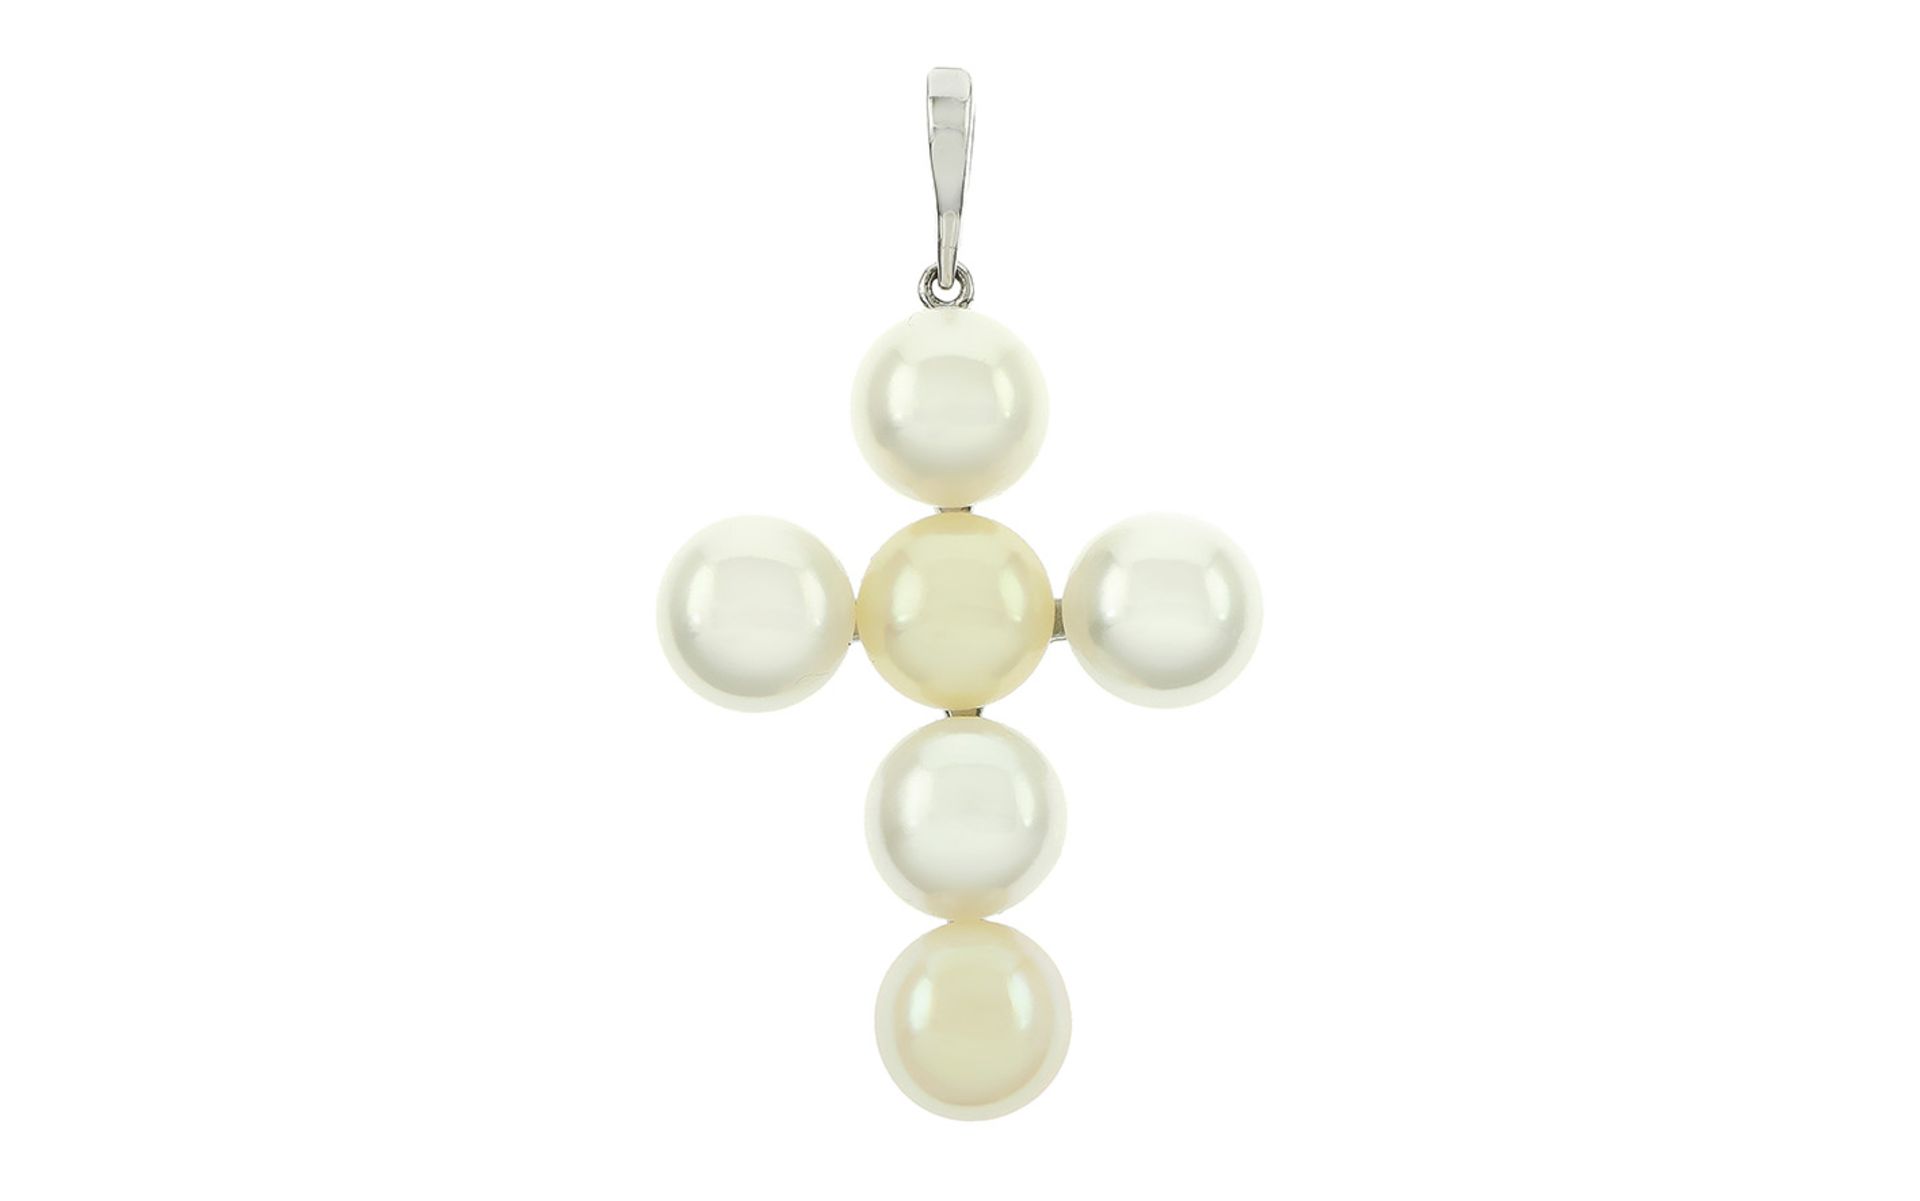 Perlen Anhänger Kreuz18K WG mit Perlen, weiß und champagner Farben, Gesamlänge: 52,70 mm, Breite: